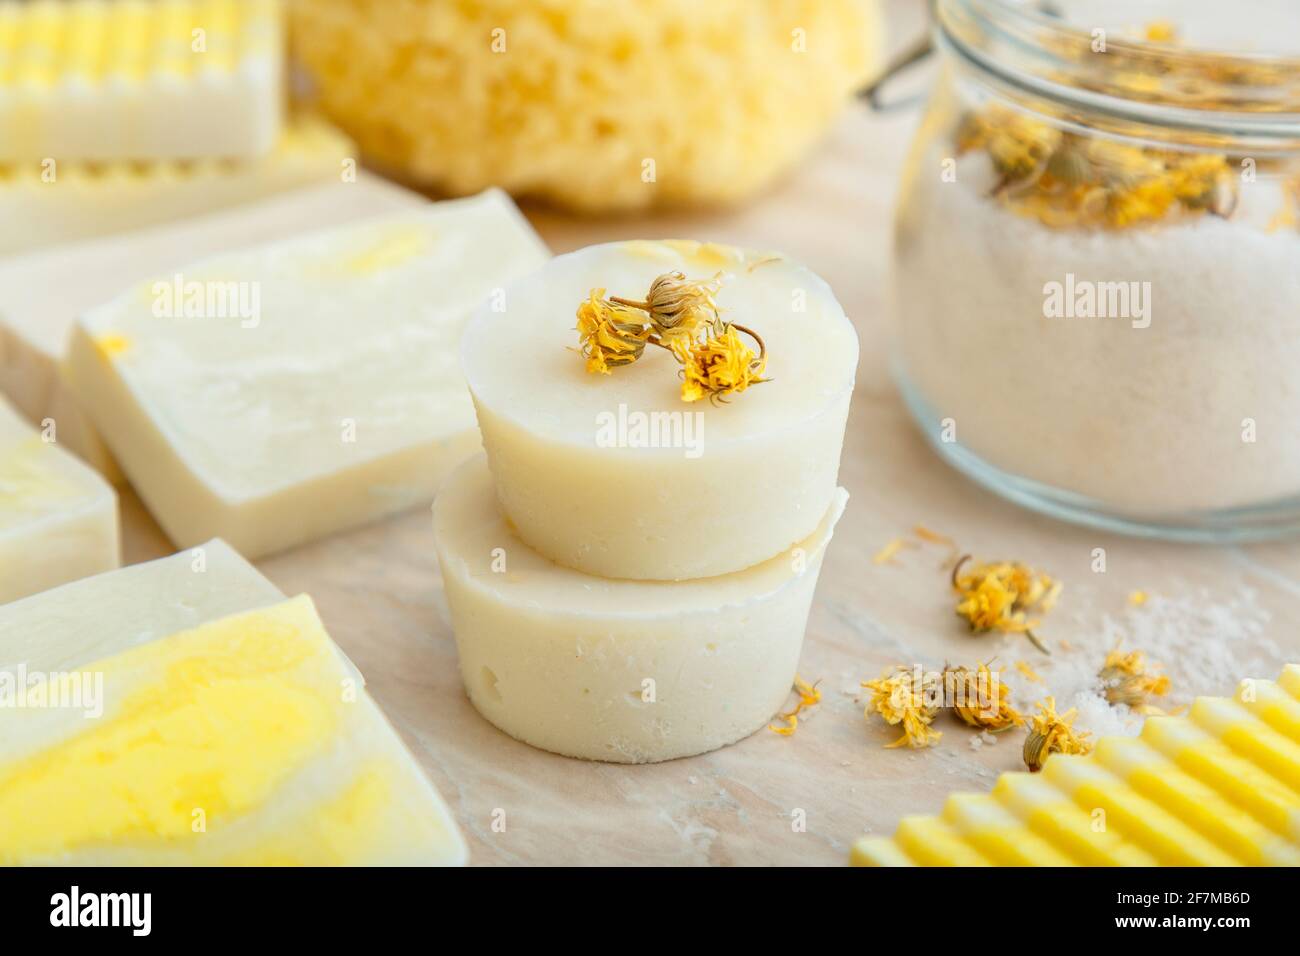 Barras redondas de jabón blanco con hierbas secas flores de marigold.  Productos de baño de spa sal aromática, muchos jabones artesanales  naturales sobre mesa de mármol. Sólido champú bar Fotografía de stock -